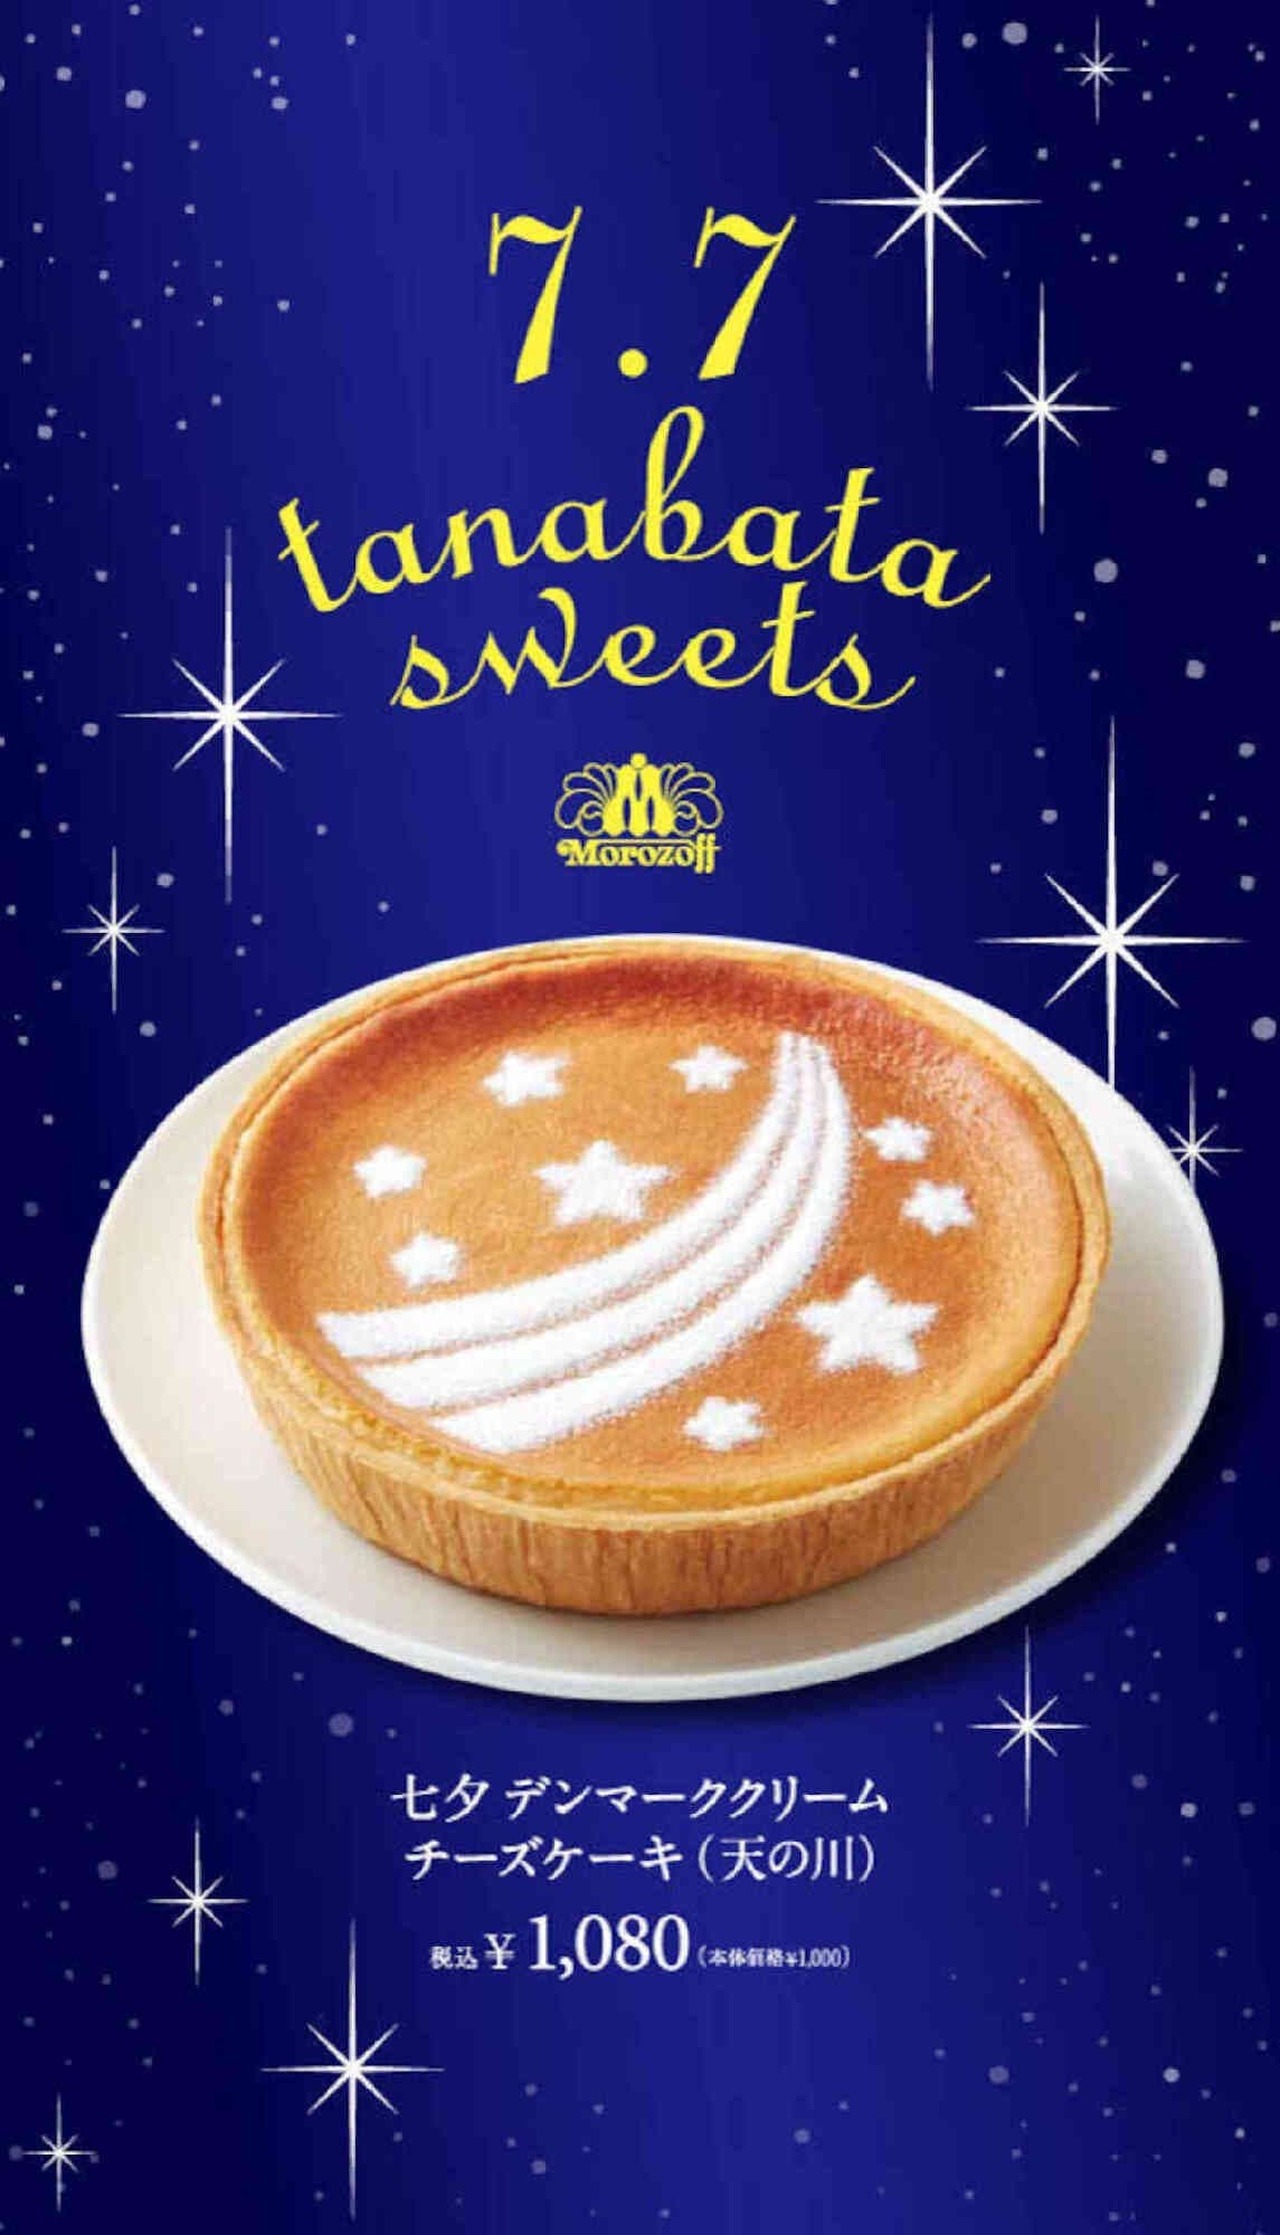 Morozoff "Tanabata Danish Cream Cheesecake (Milky Way)"